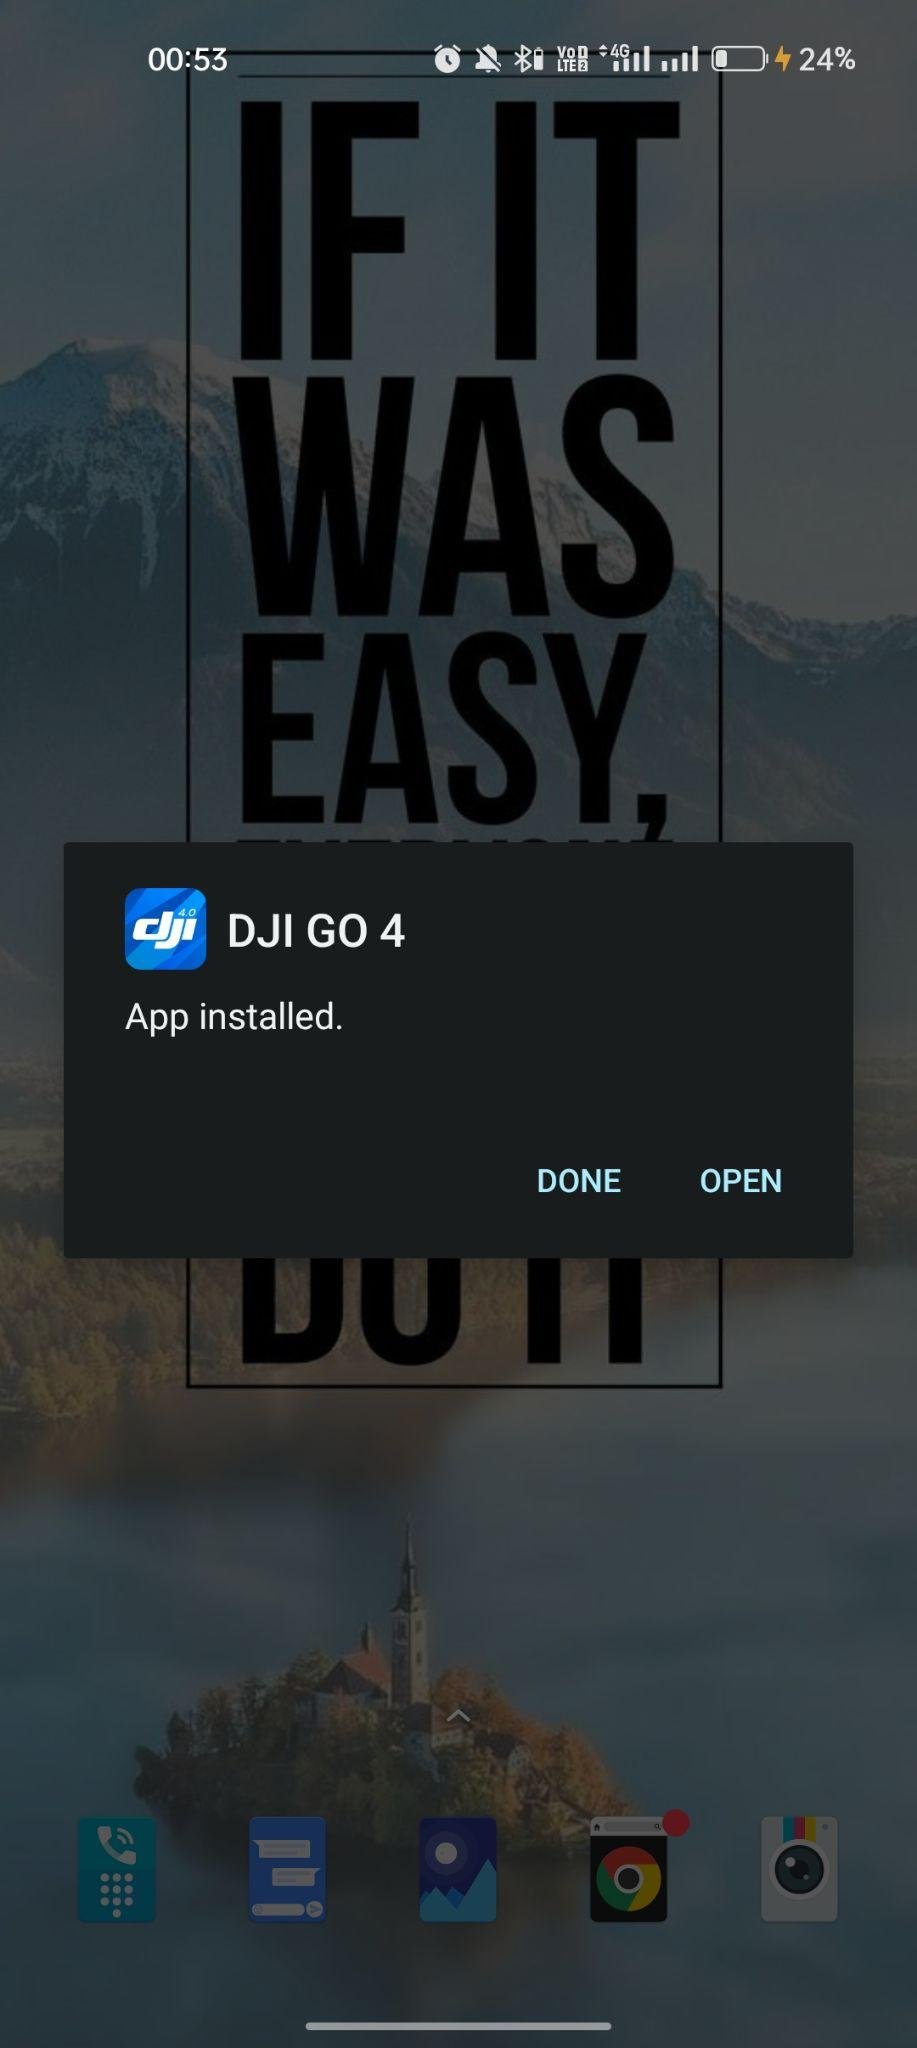 DJI Go 4 apk installed